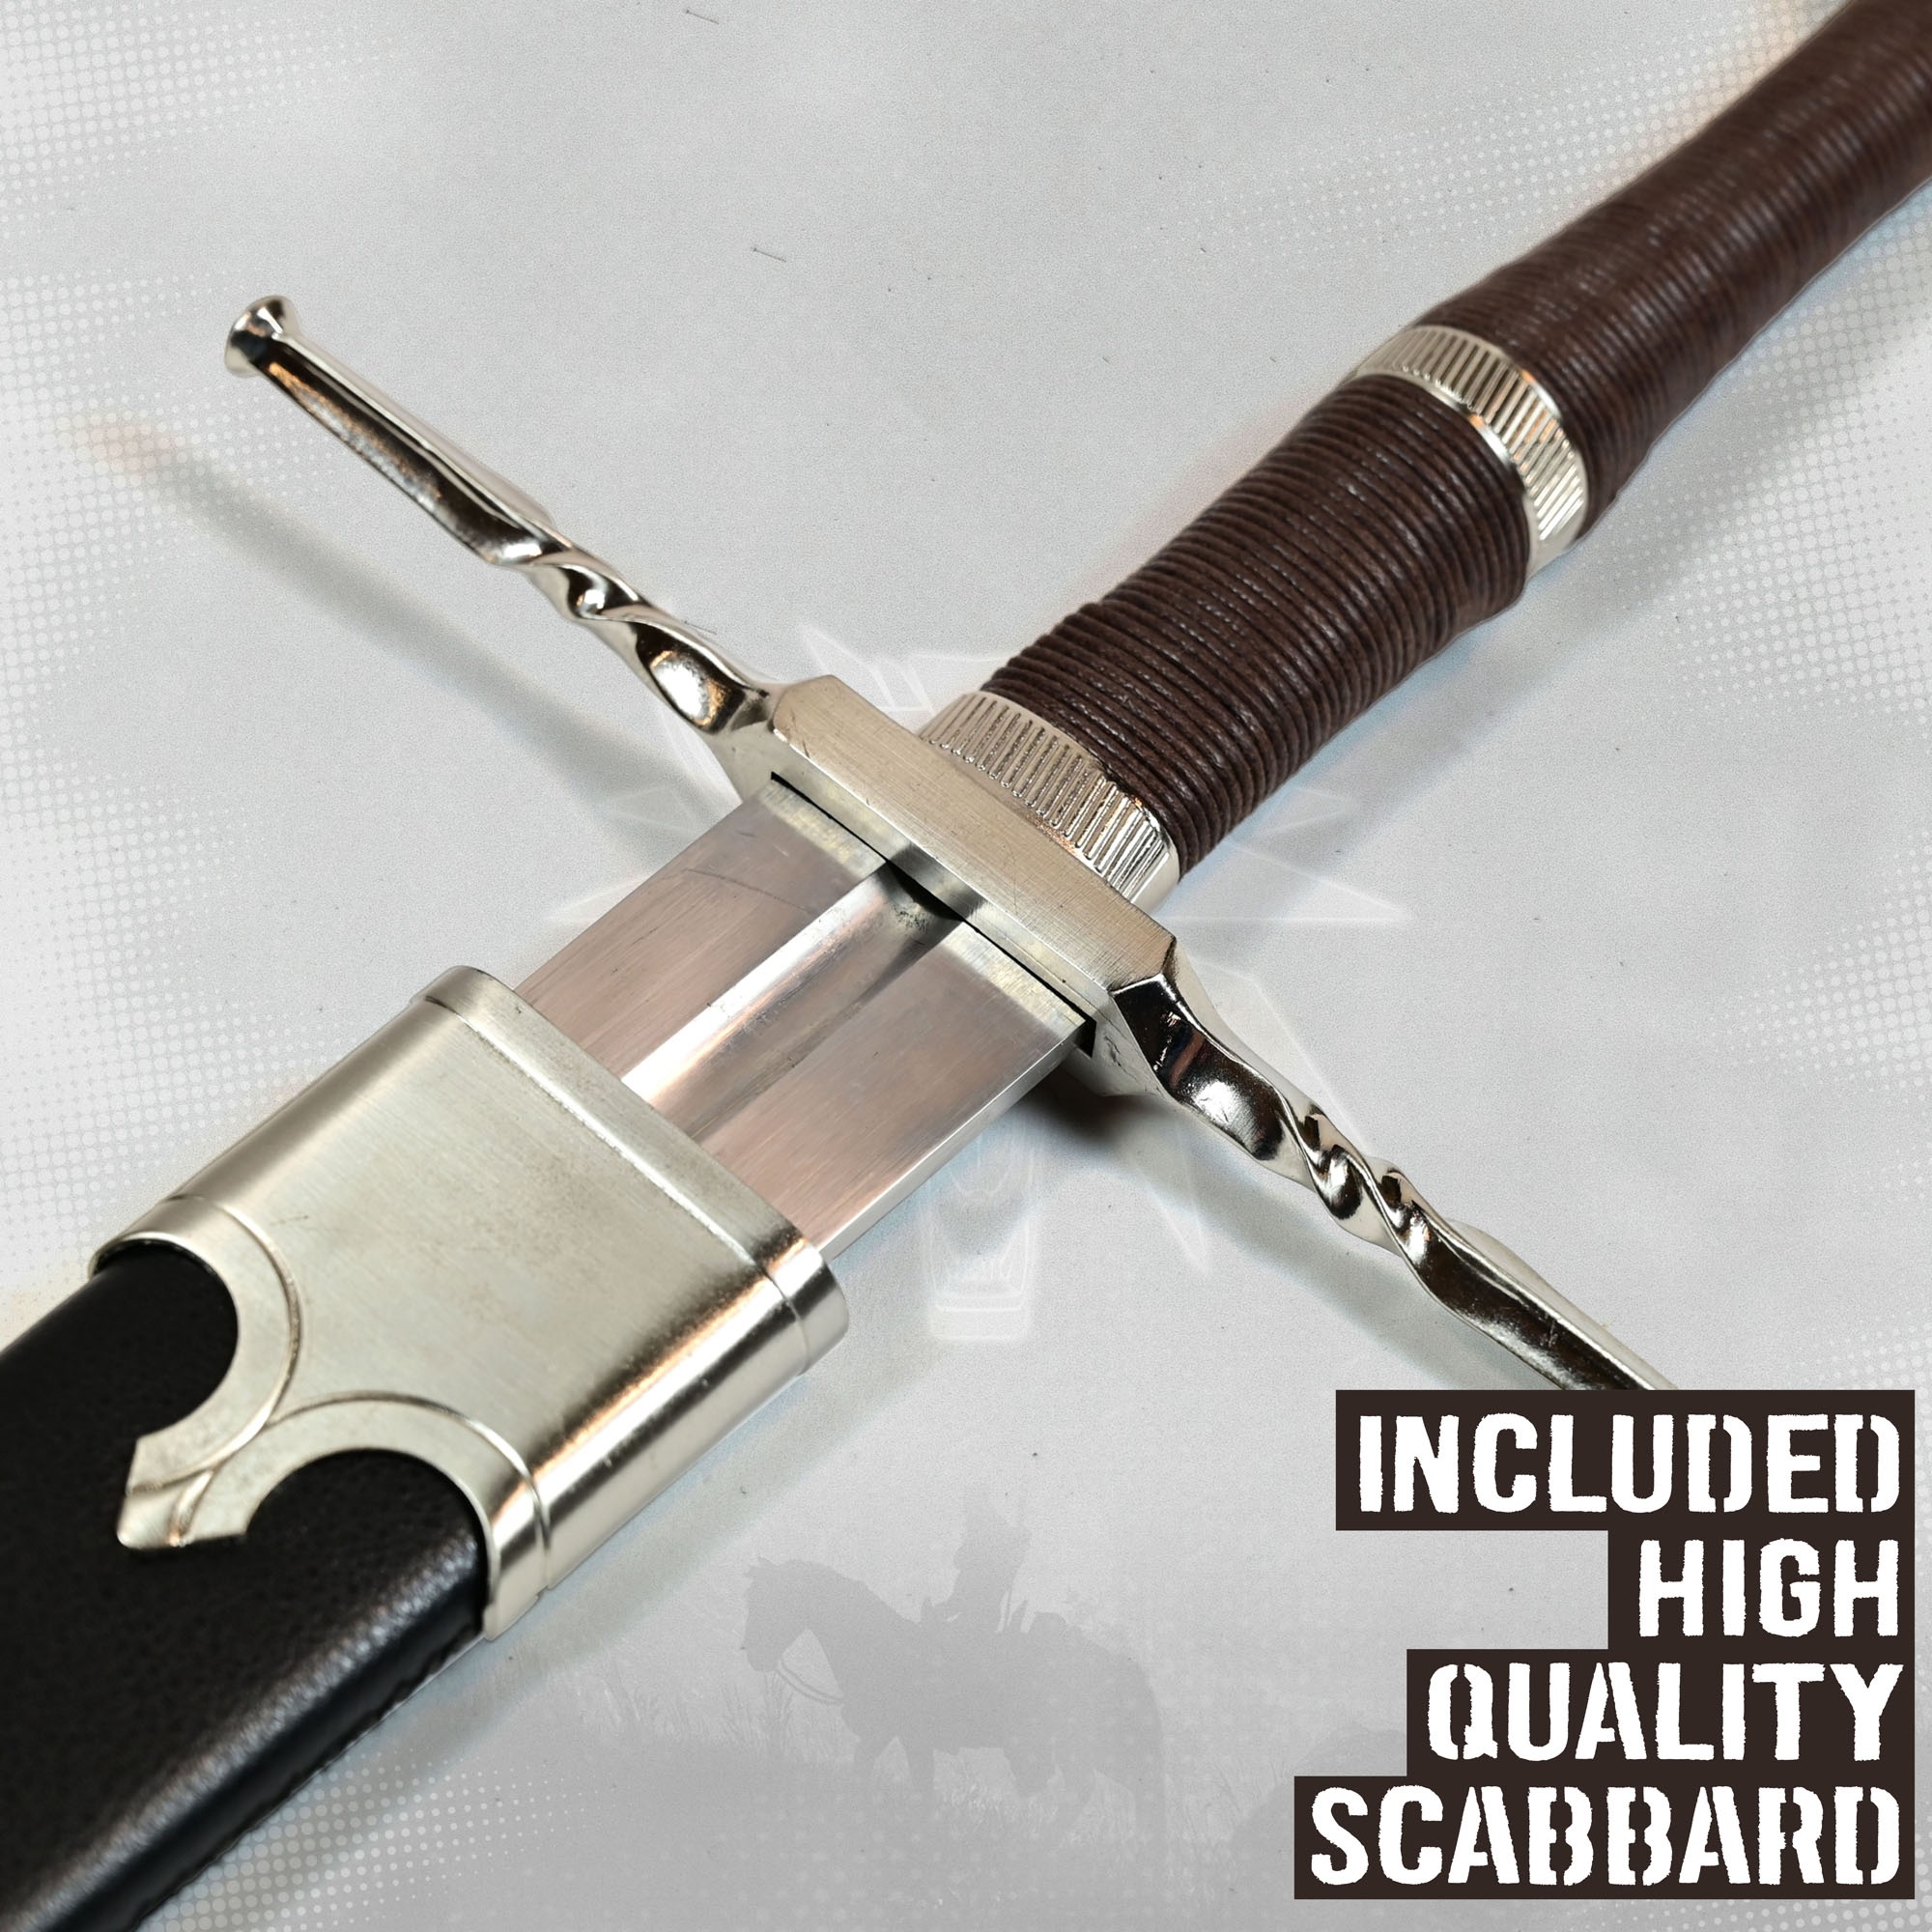 Witcher - Stahl Schwert mit Scheide, handgeschmiedet